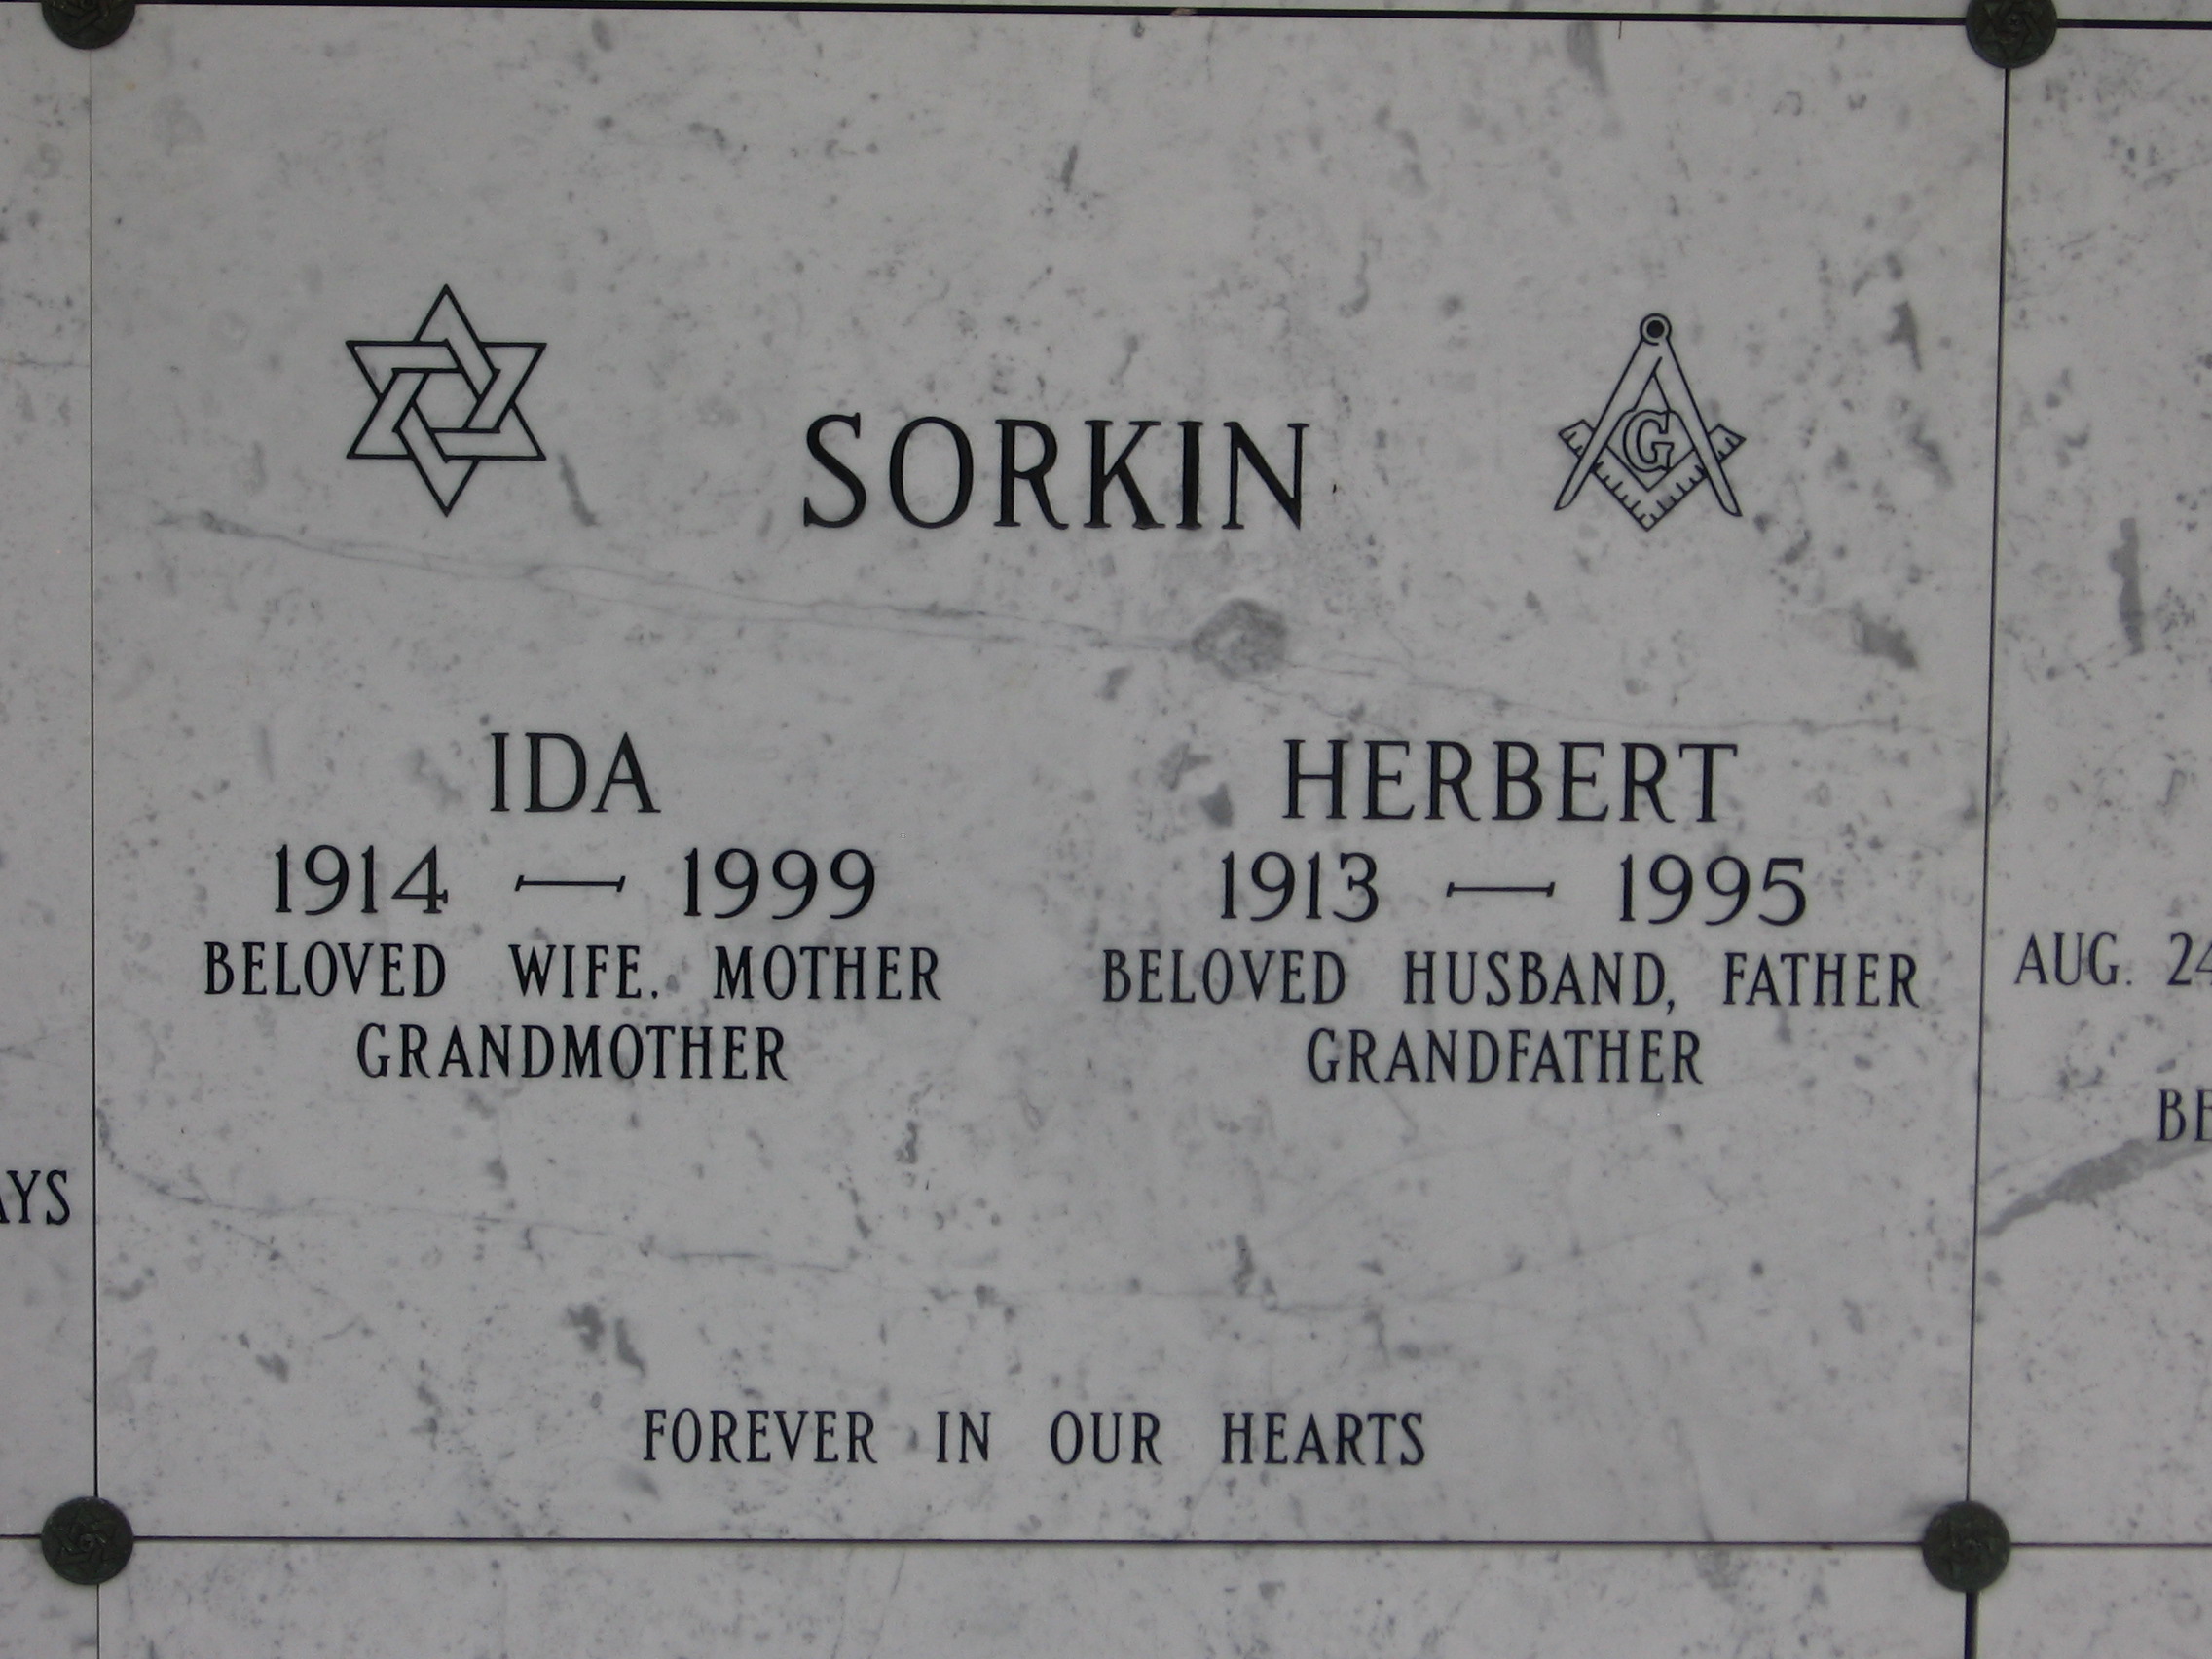 Ida Sorkin